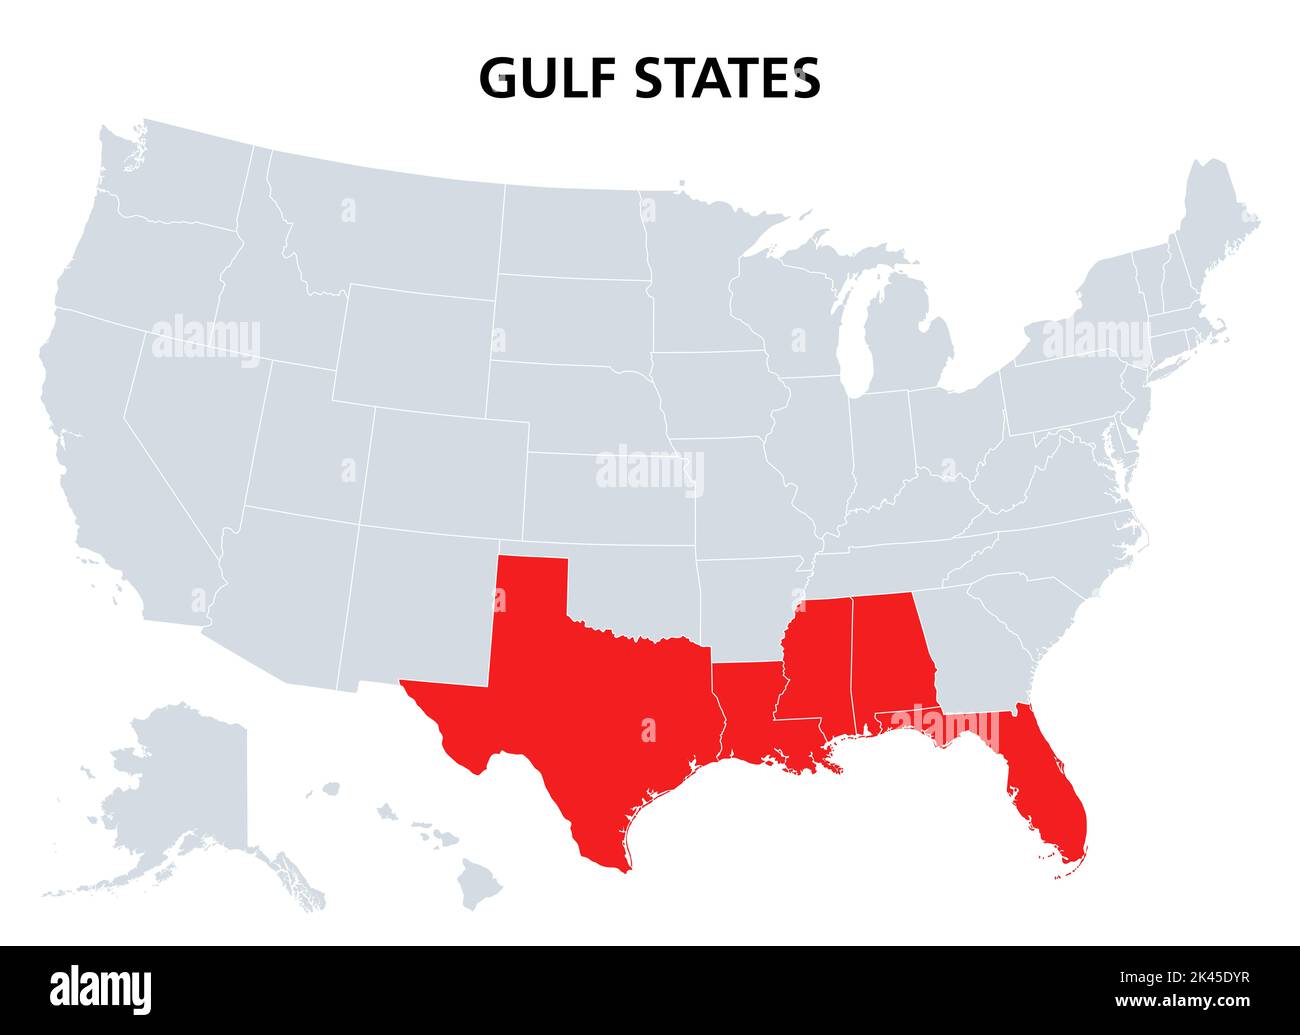 Golfstaaten der Vereinigten Staaten, politische Landkarte. Gulf South, wo Texas, Louisiana, Mississippi, Alabama und Florida auf den Golf von Mexiko treffen. Stockfoto